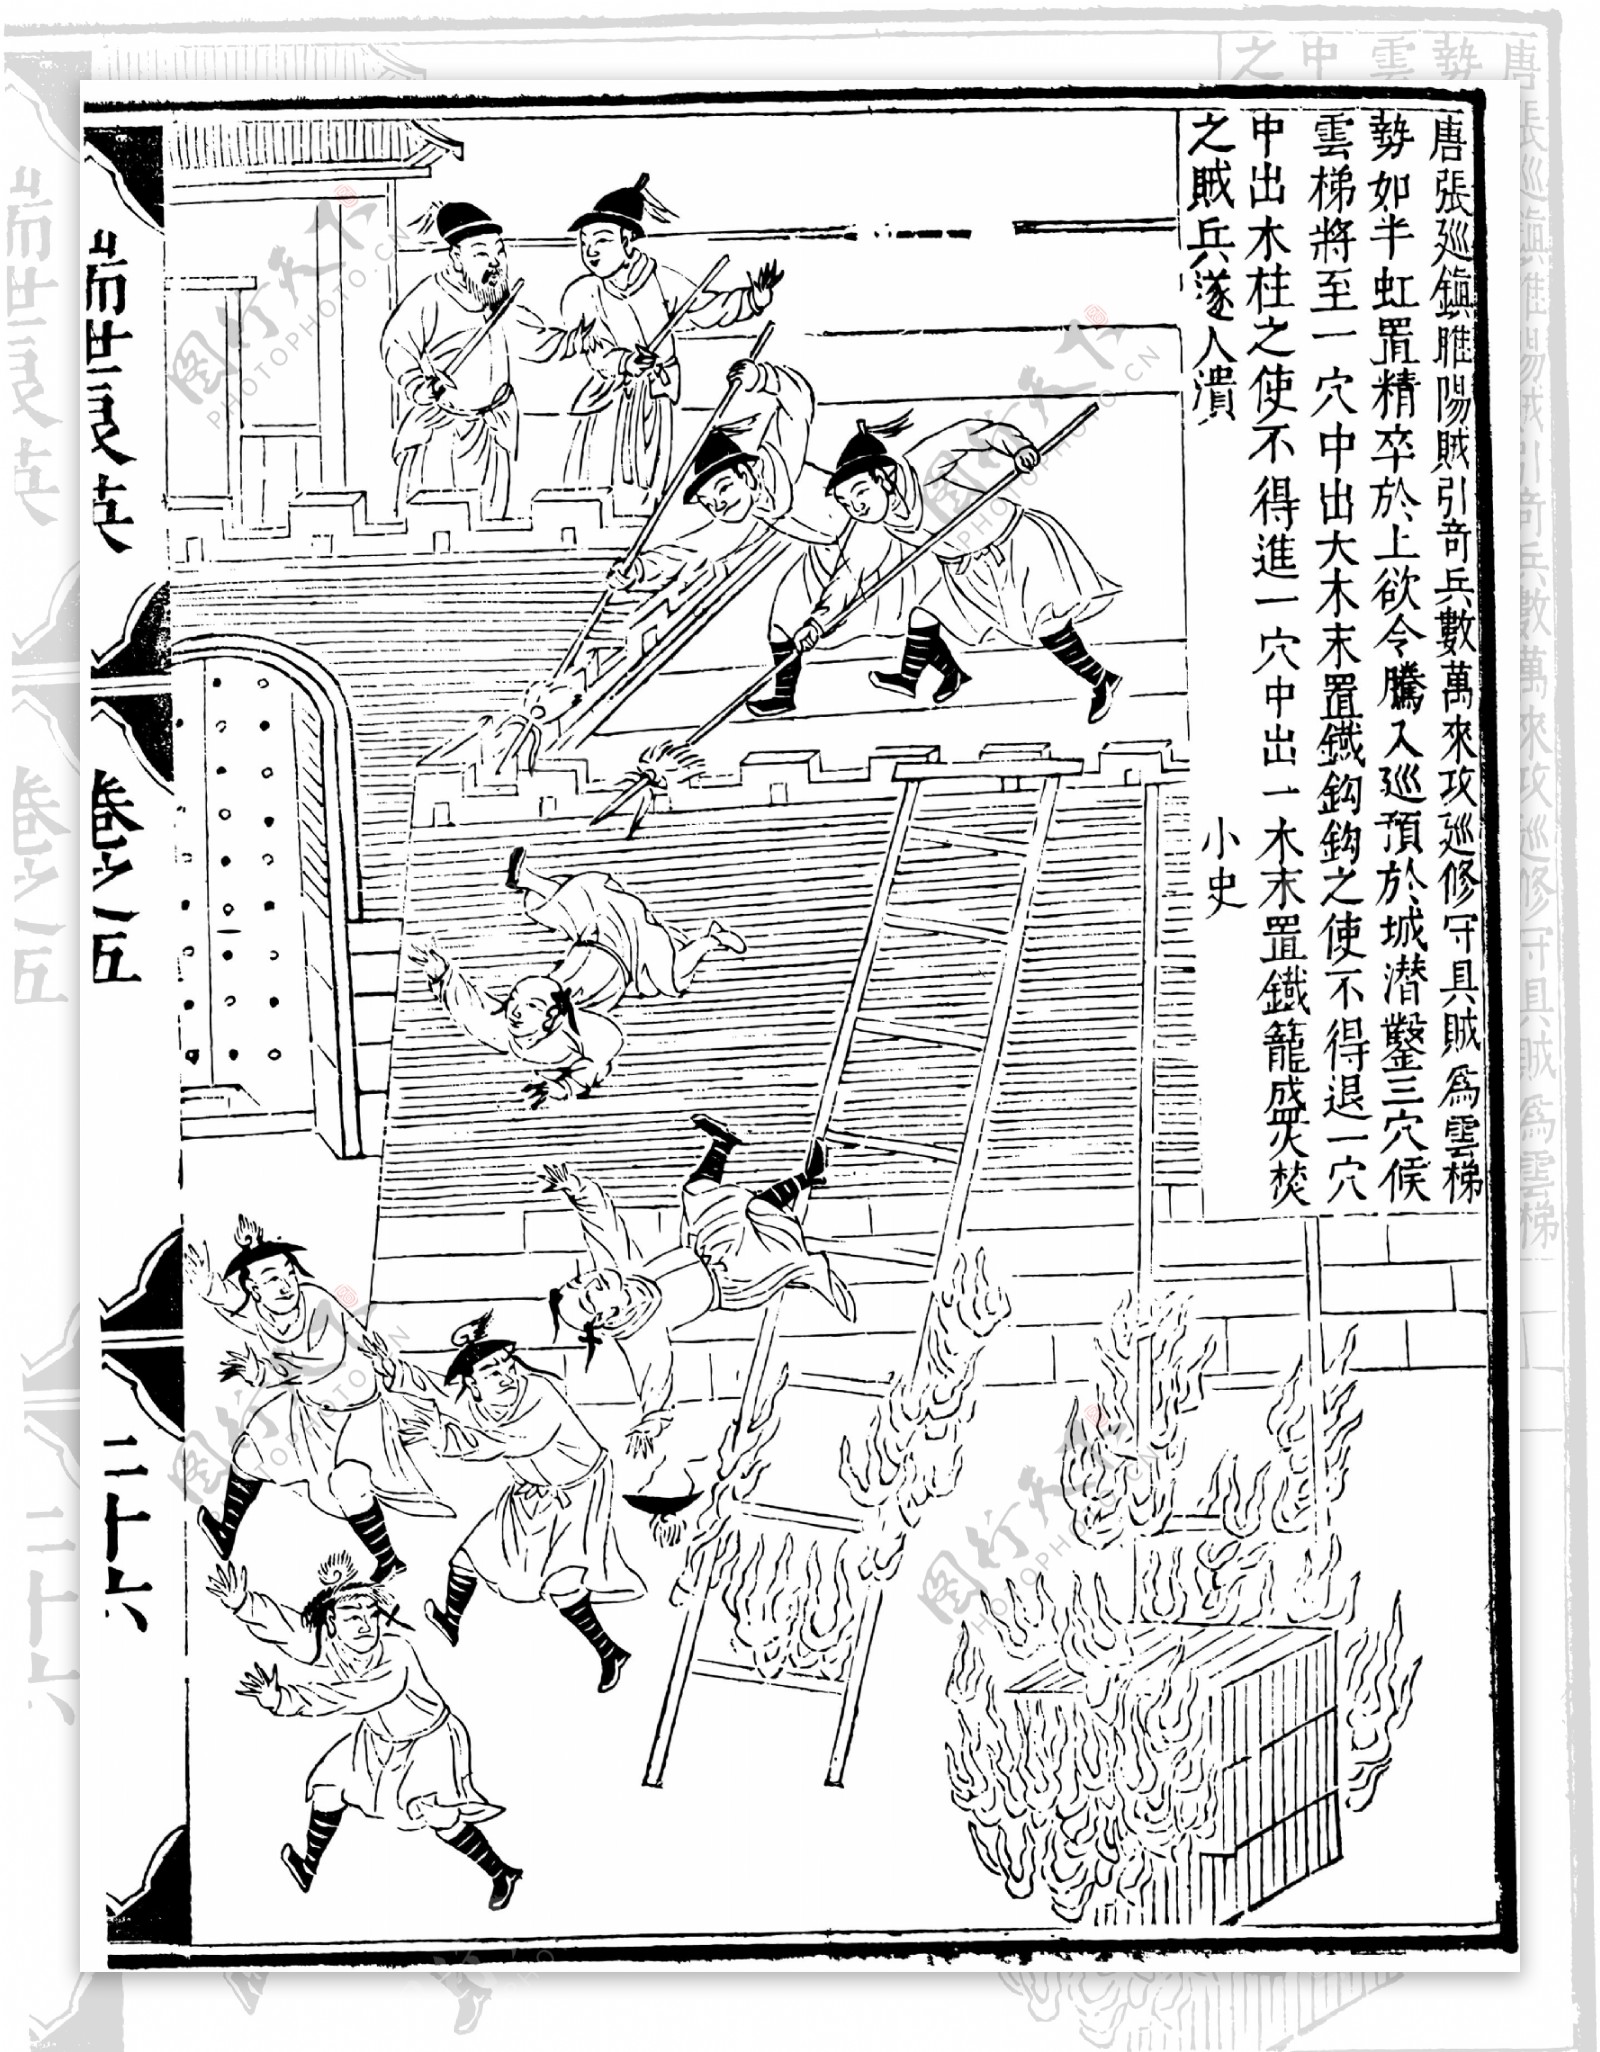 瑞世良英木刻版画中国传统文化69